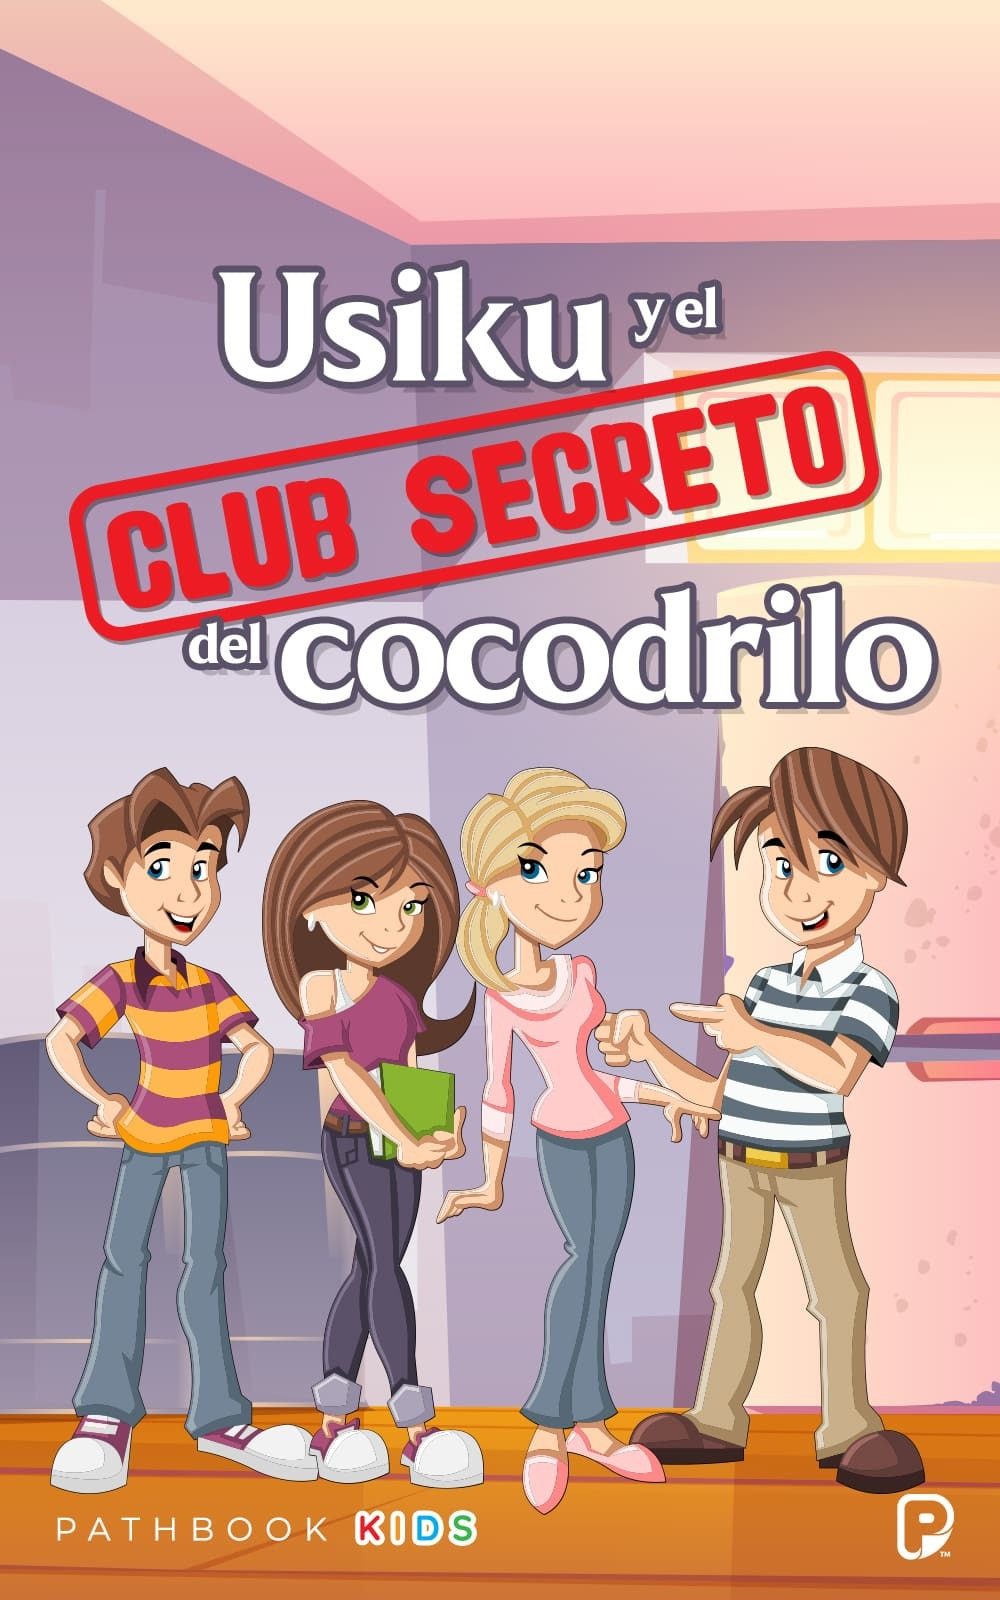 Usiku y el club secreto del cocodrilo